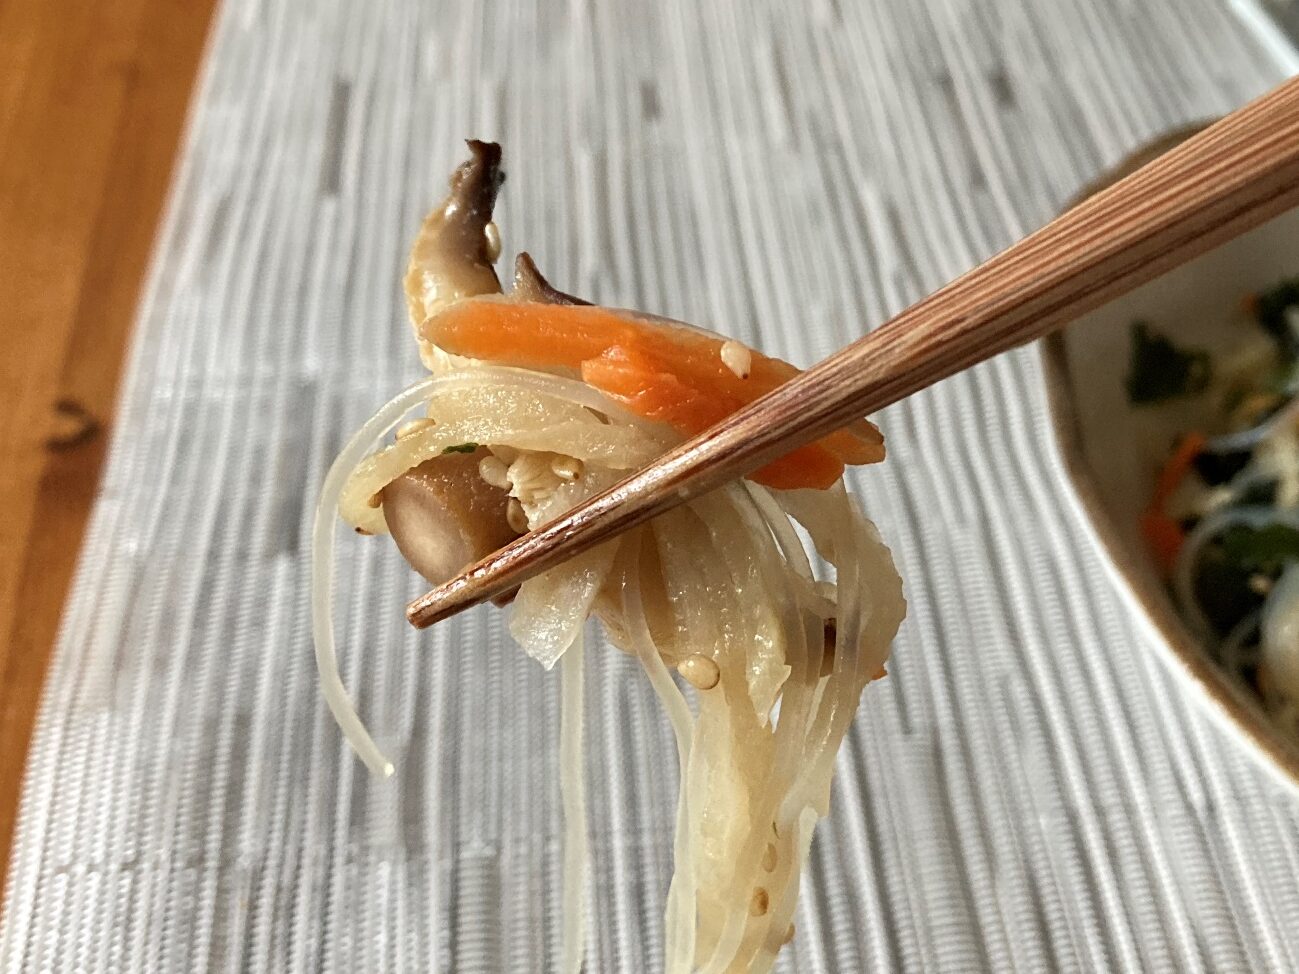 箸で持ち上げた業務スーパーの「煮物の具千切り大根」で作った春雨サラダ